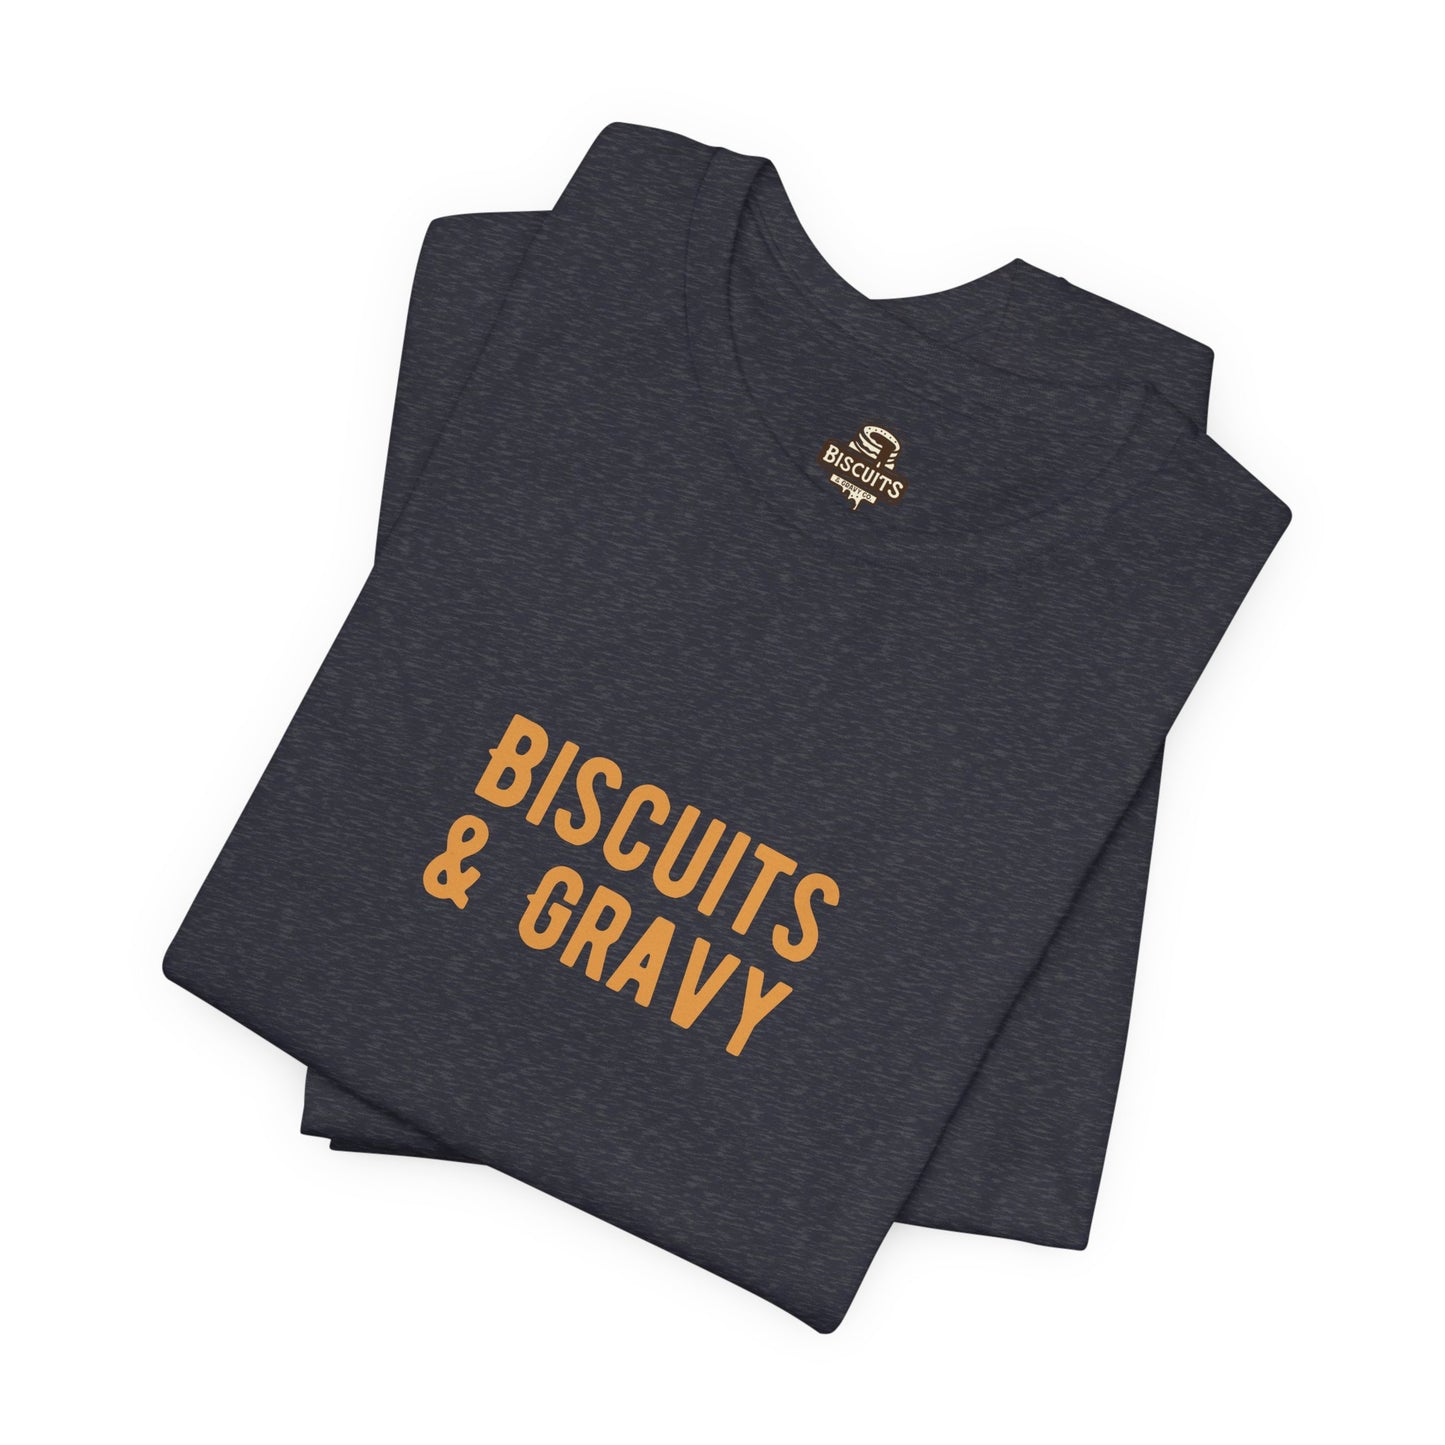 Biscuits & Gravy Original Tee (Heather Navy)